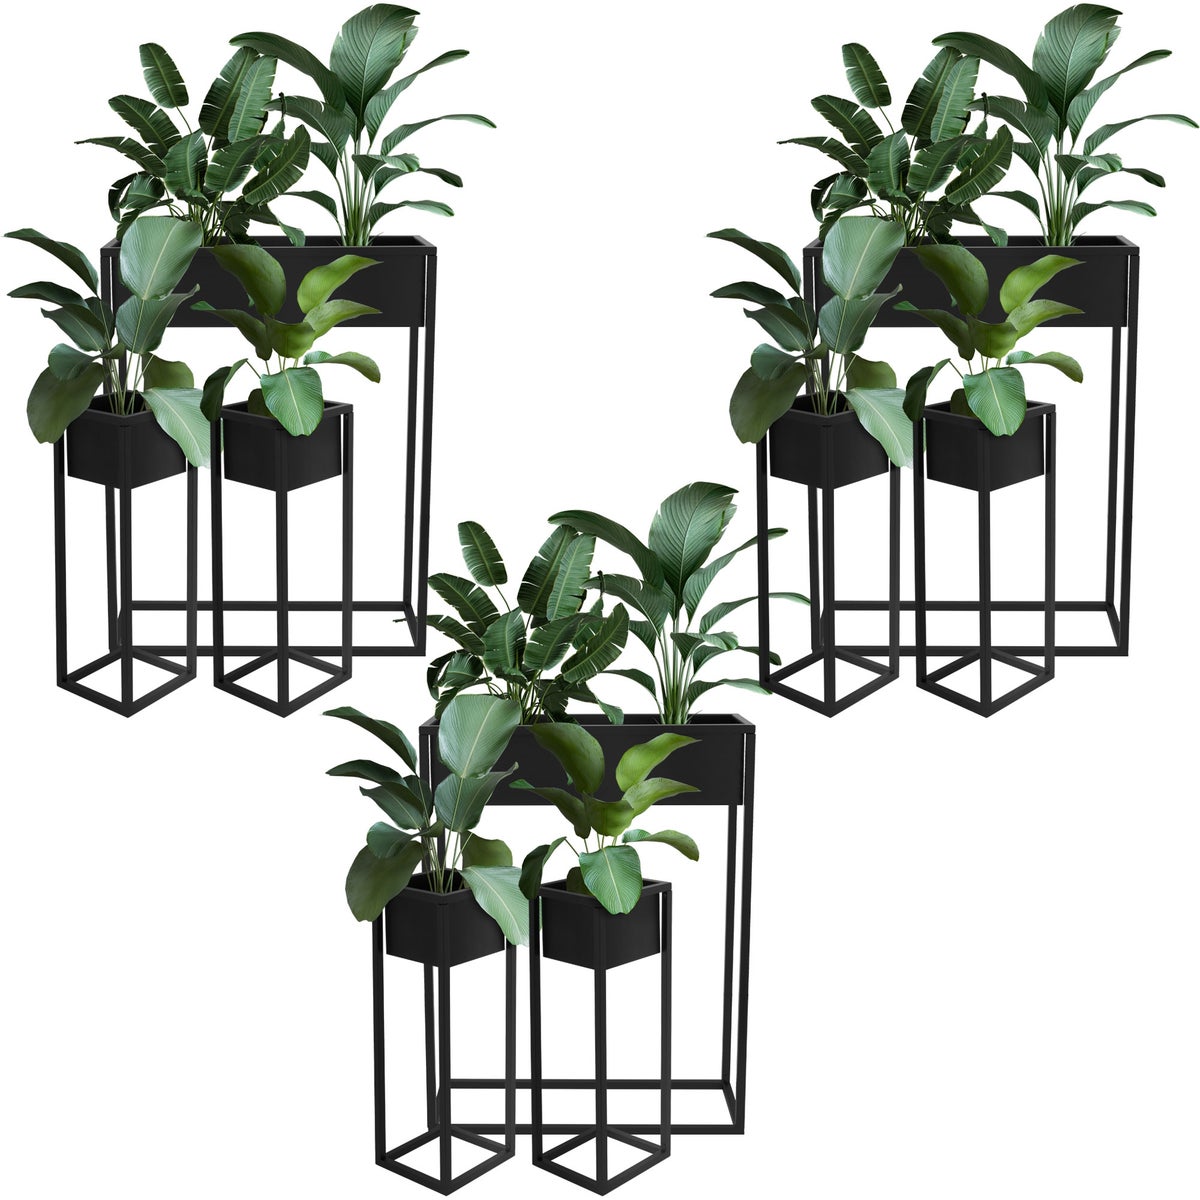 ML-Design Blumenständer 9er Set im Schwarz aus Metall, 60x20x80 cm / 20x20x60 cm, stehend, Übertopfständer für Pflanzen Innen- und Außen, Pflanzkasten Blumenkasten Pflanzenständer Hochbeet Kräuterbeet